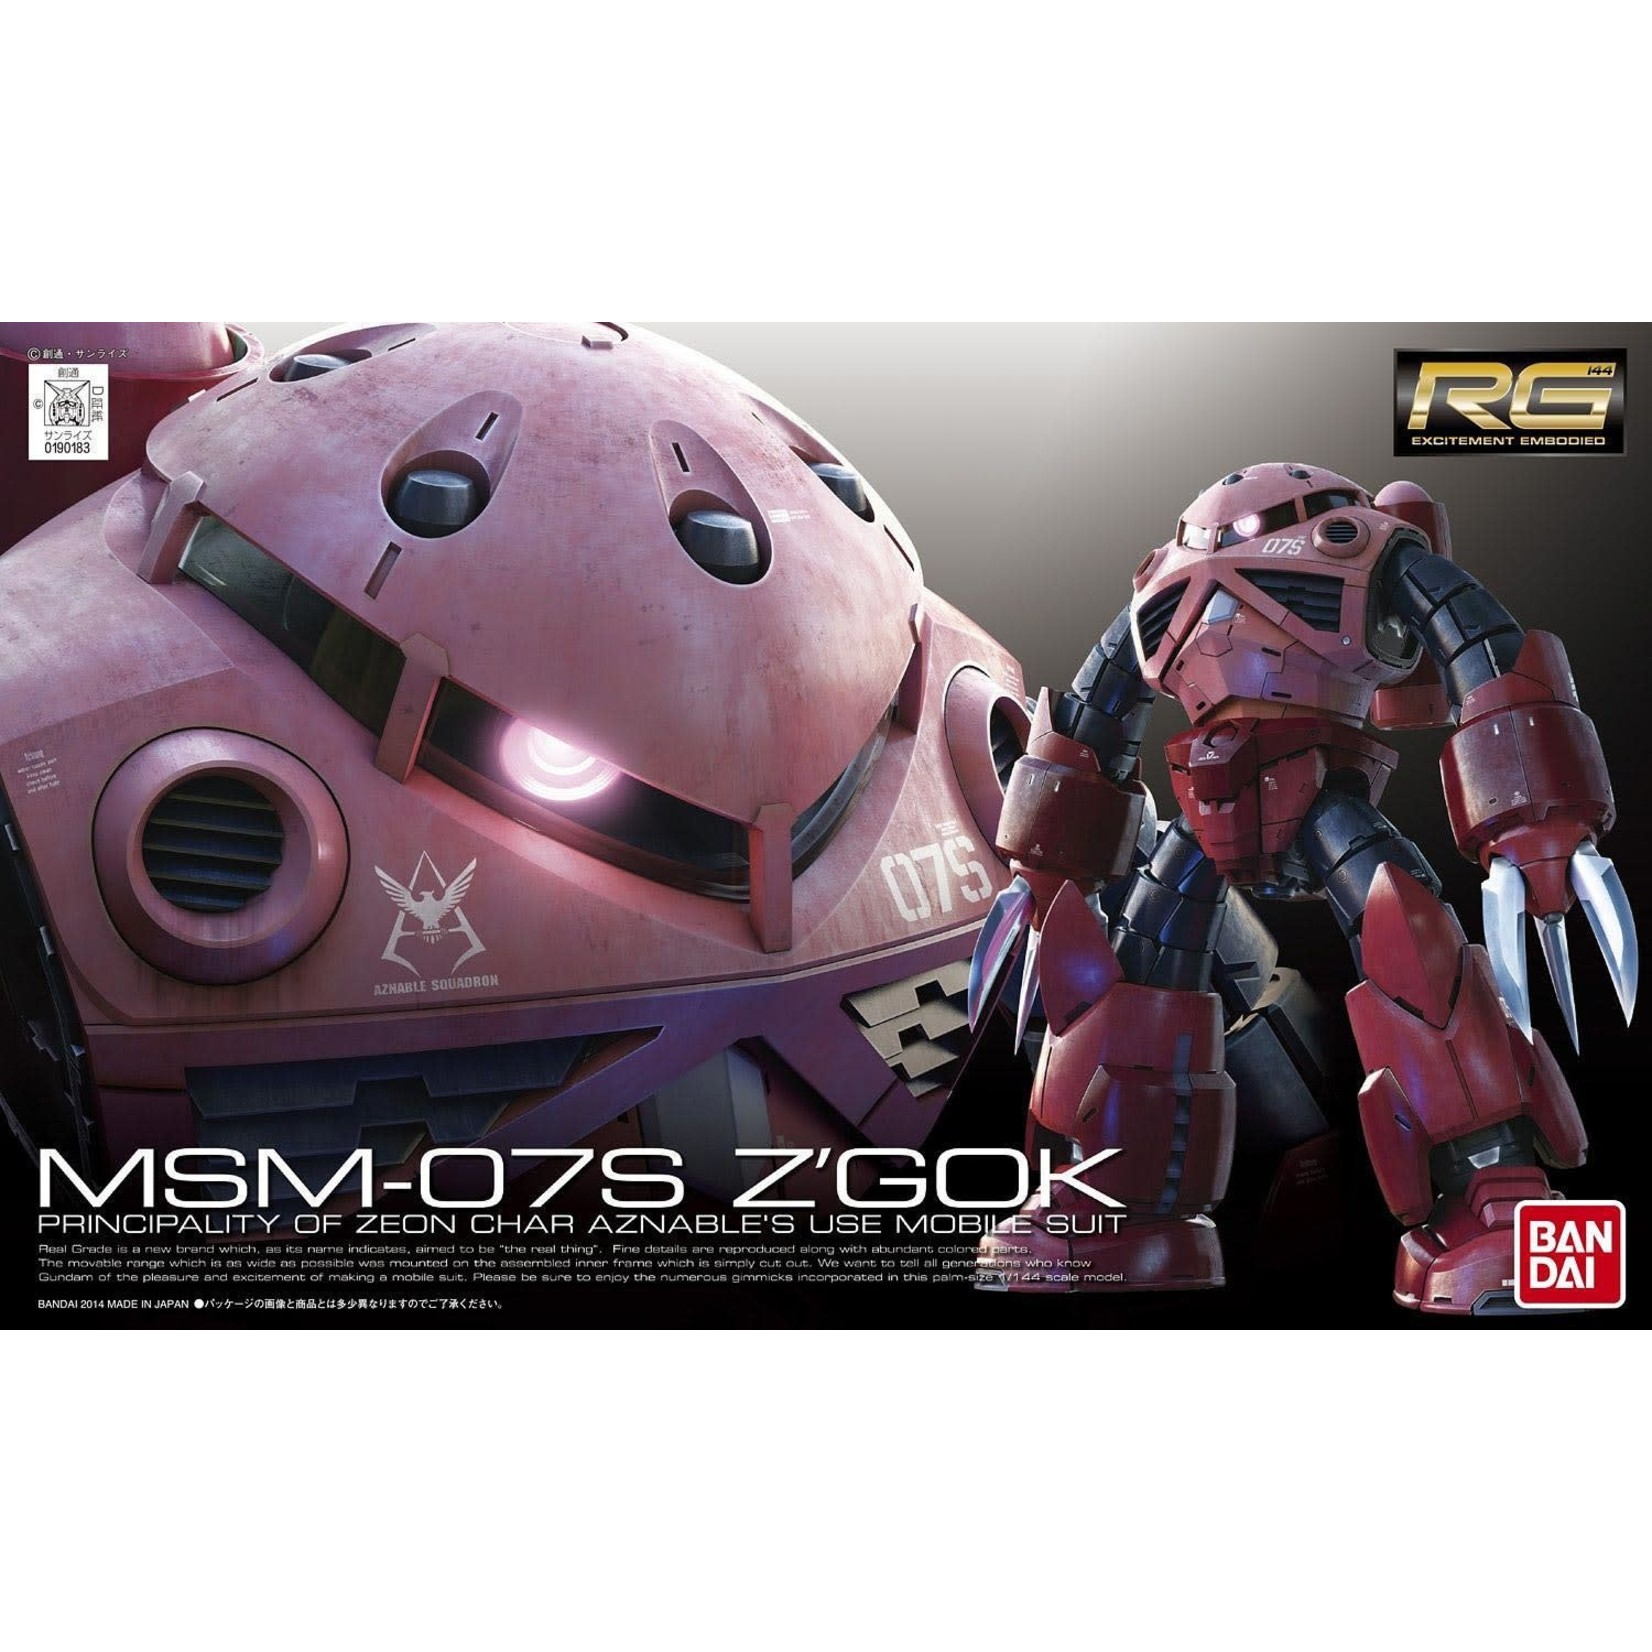 Bandai Bandai 2247112 RG #16 MSM-07S Char's Z'Gok Gundam